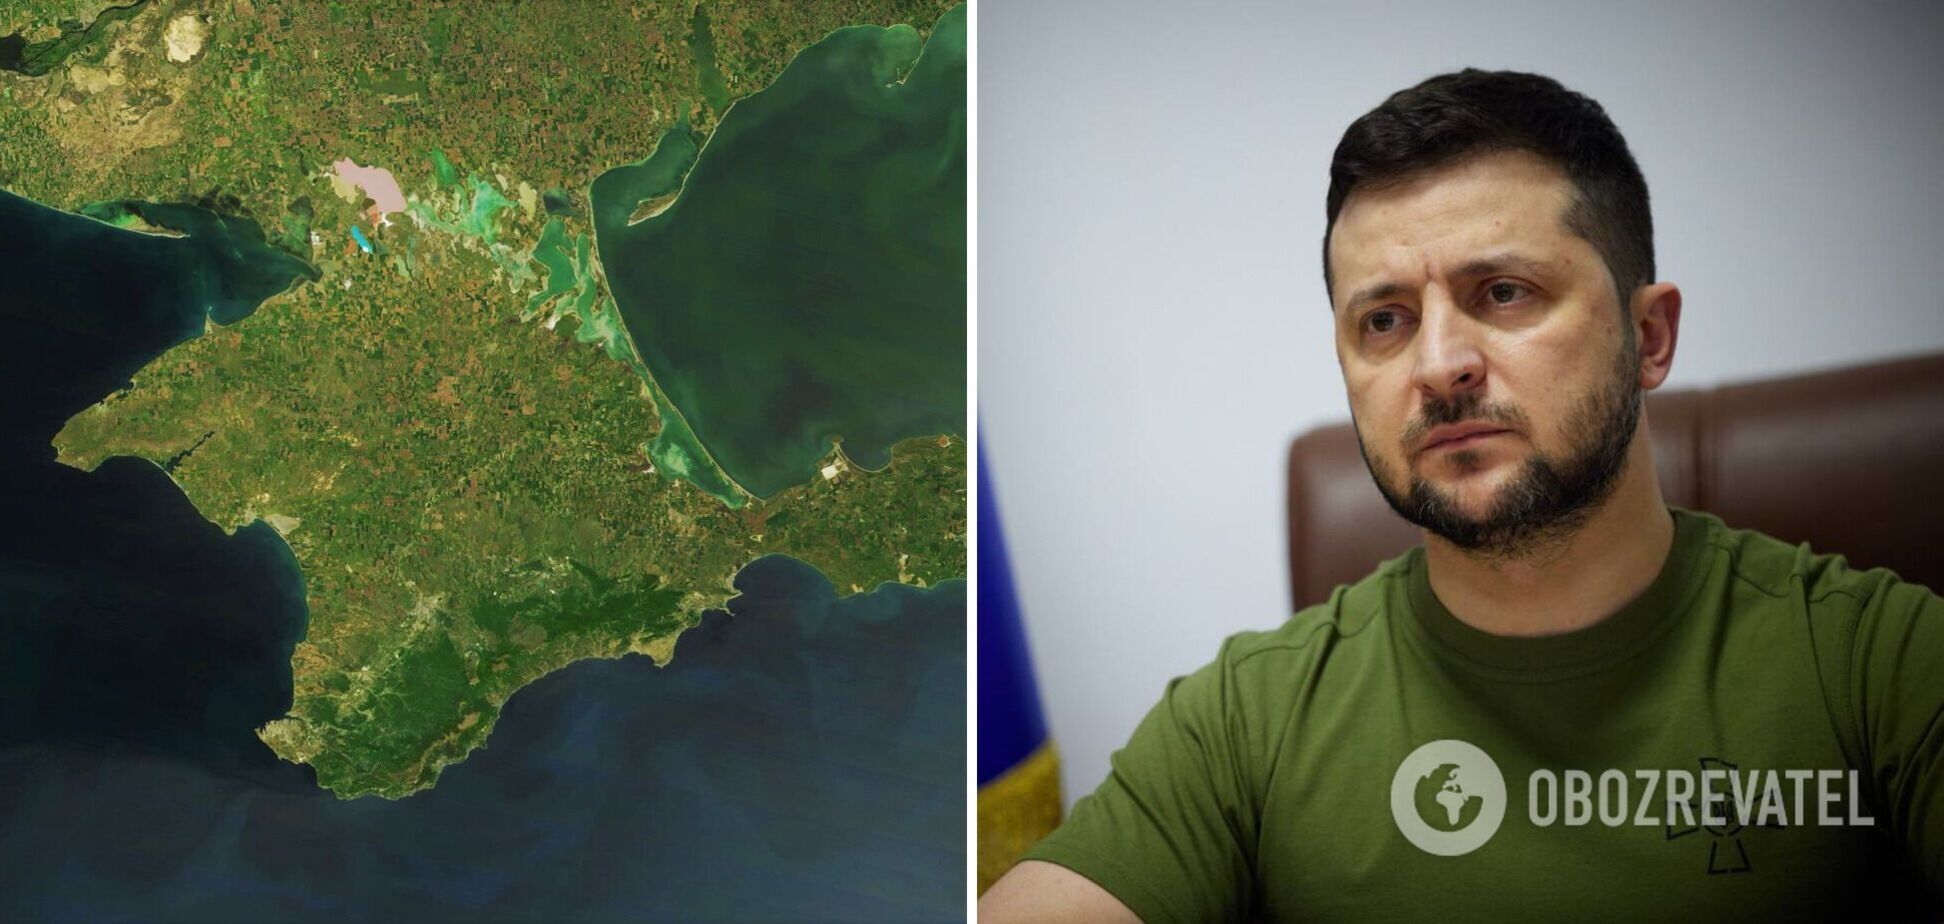 Слабка міжнародна реакція в 2014 році стала передумовою того, що Крим зараз є плацдармом для ударів по Україні, – Зеленський  